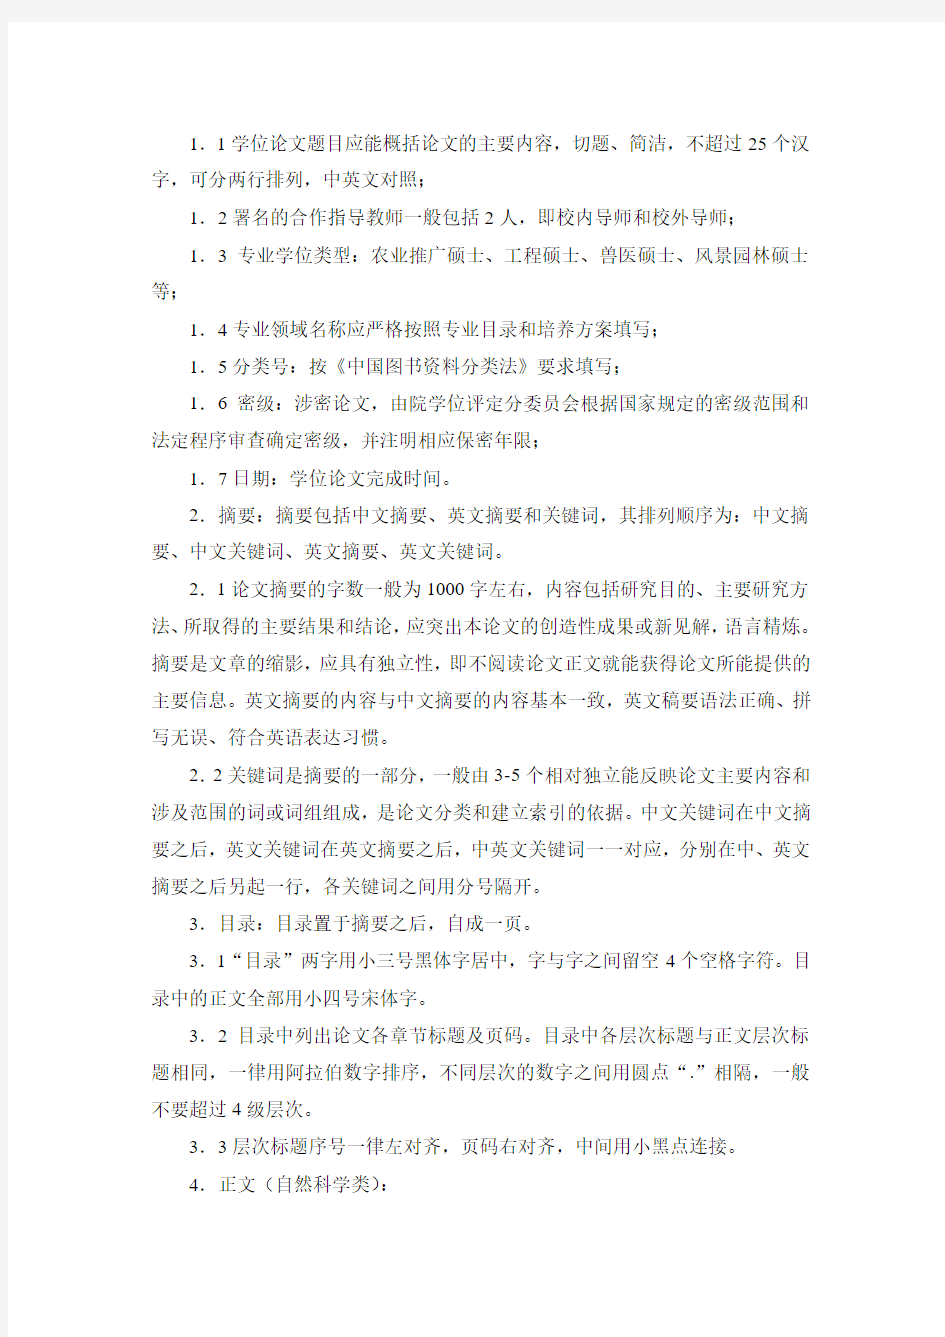 华南农业大学专业学位研究生学位论文撰写规范(试行稿)(2009年11月)